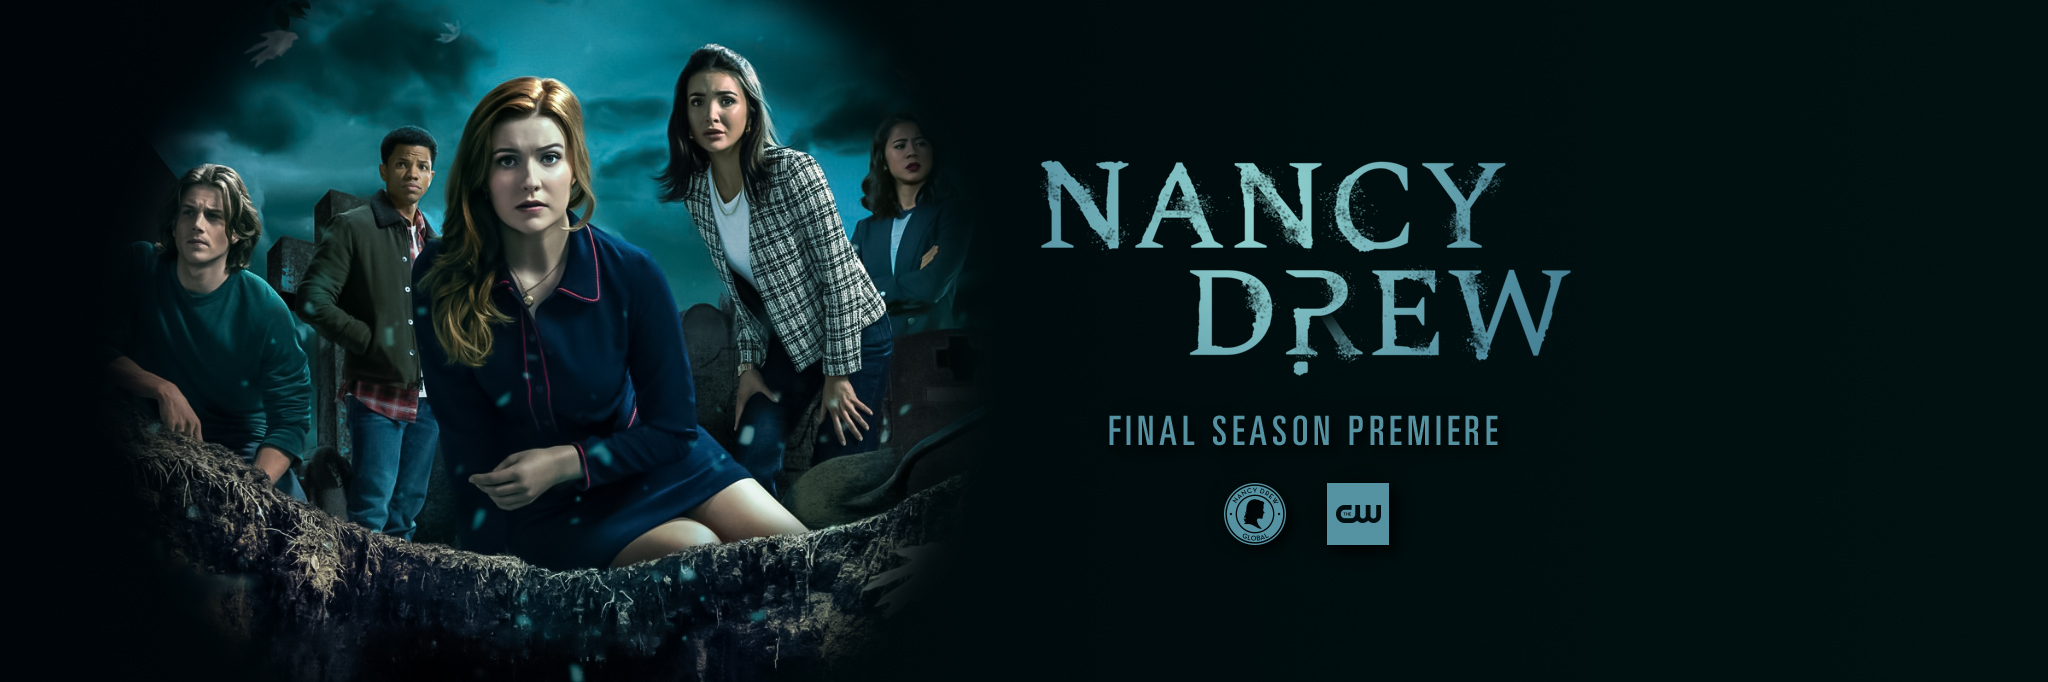 Nancy Drew Final Season Premiere!